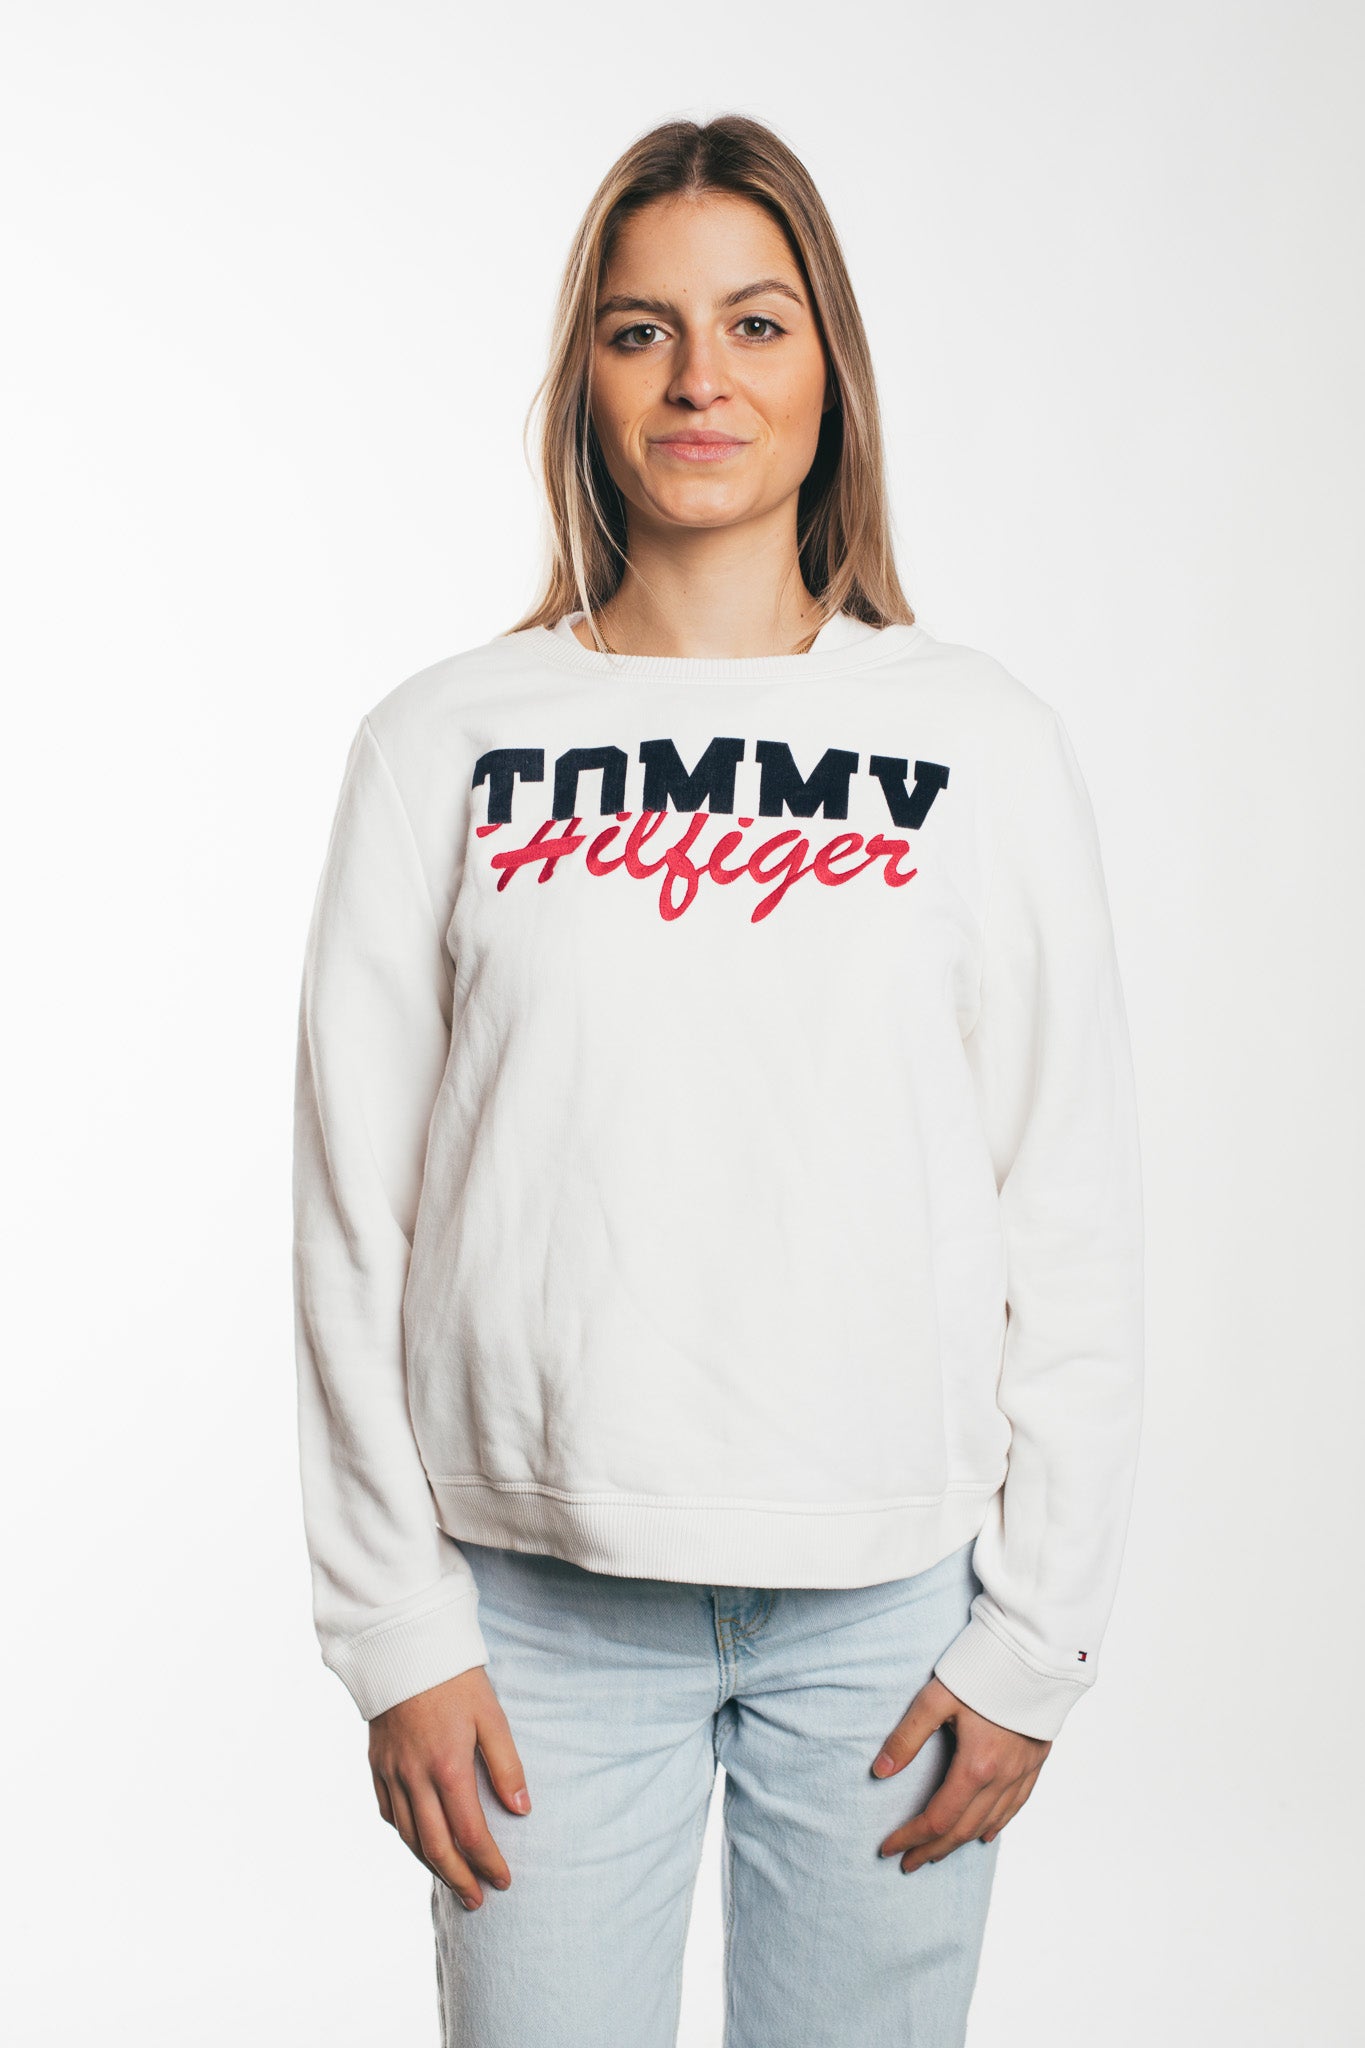 Tommy Hilfiger - Sweatshirt